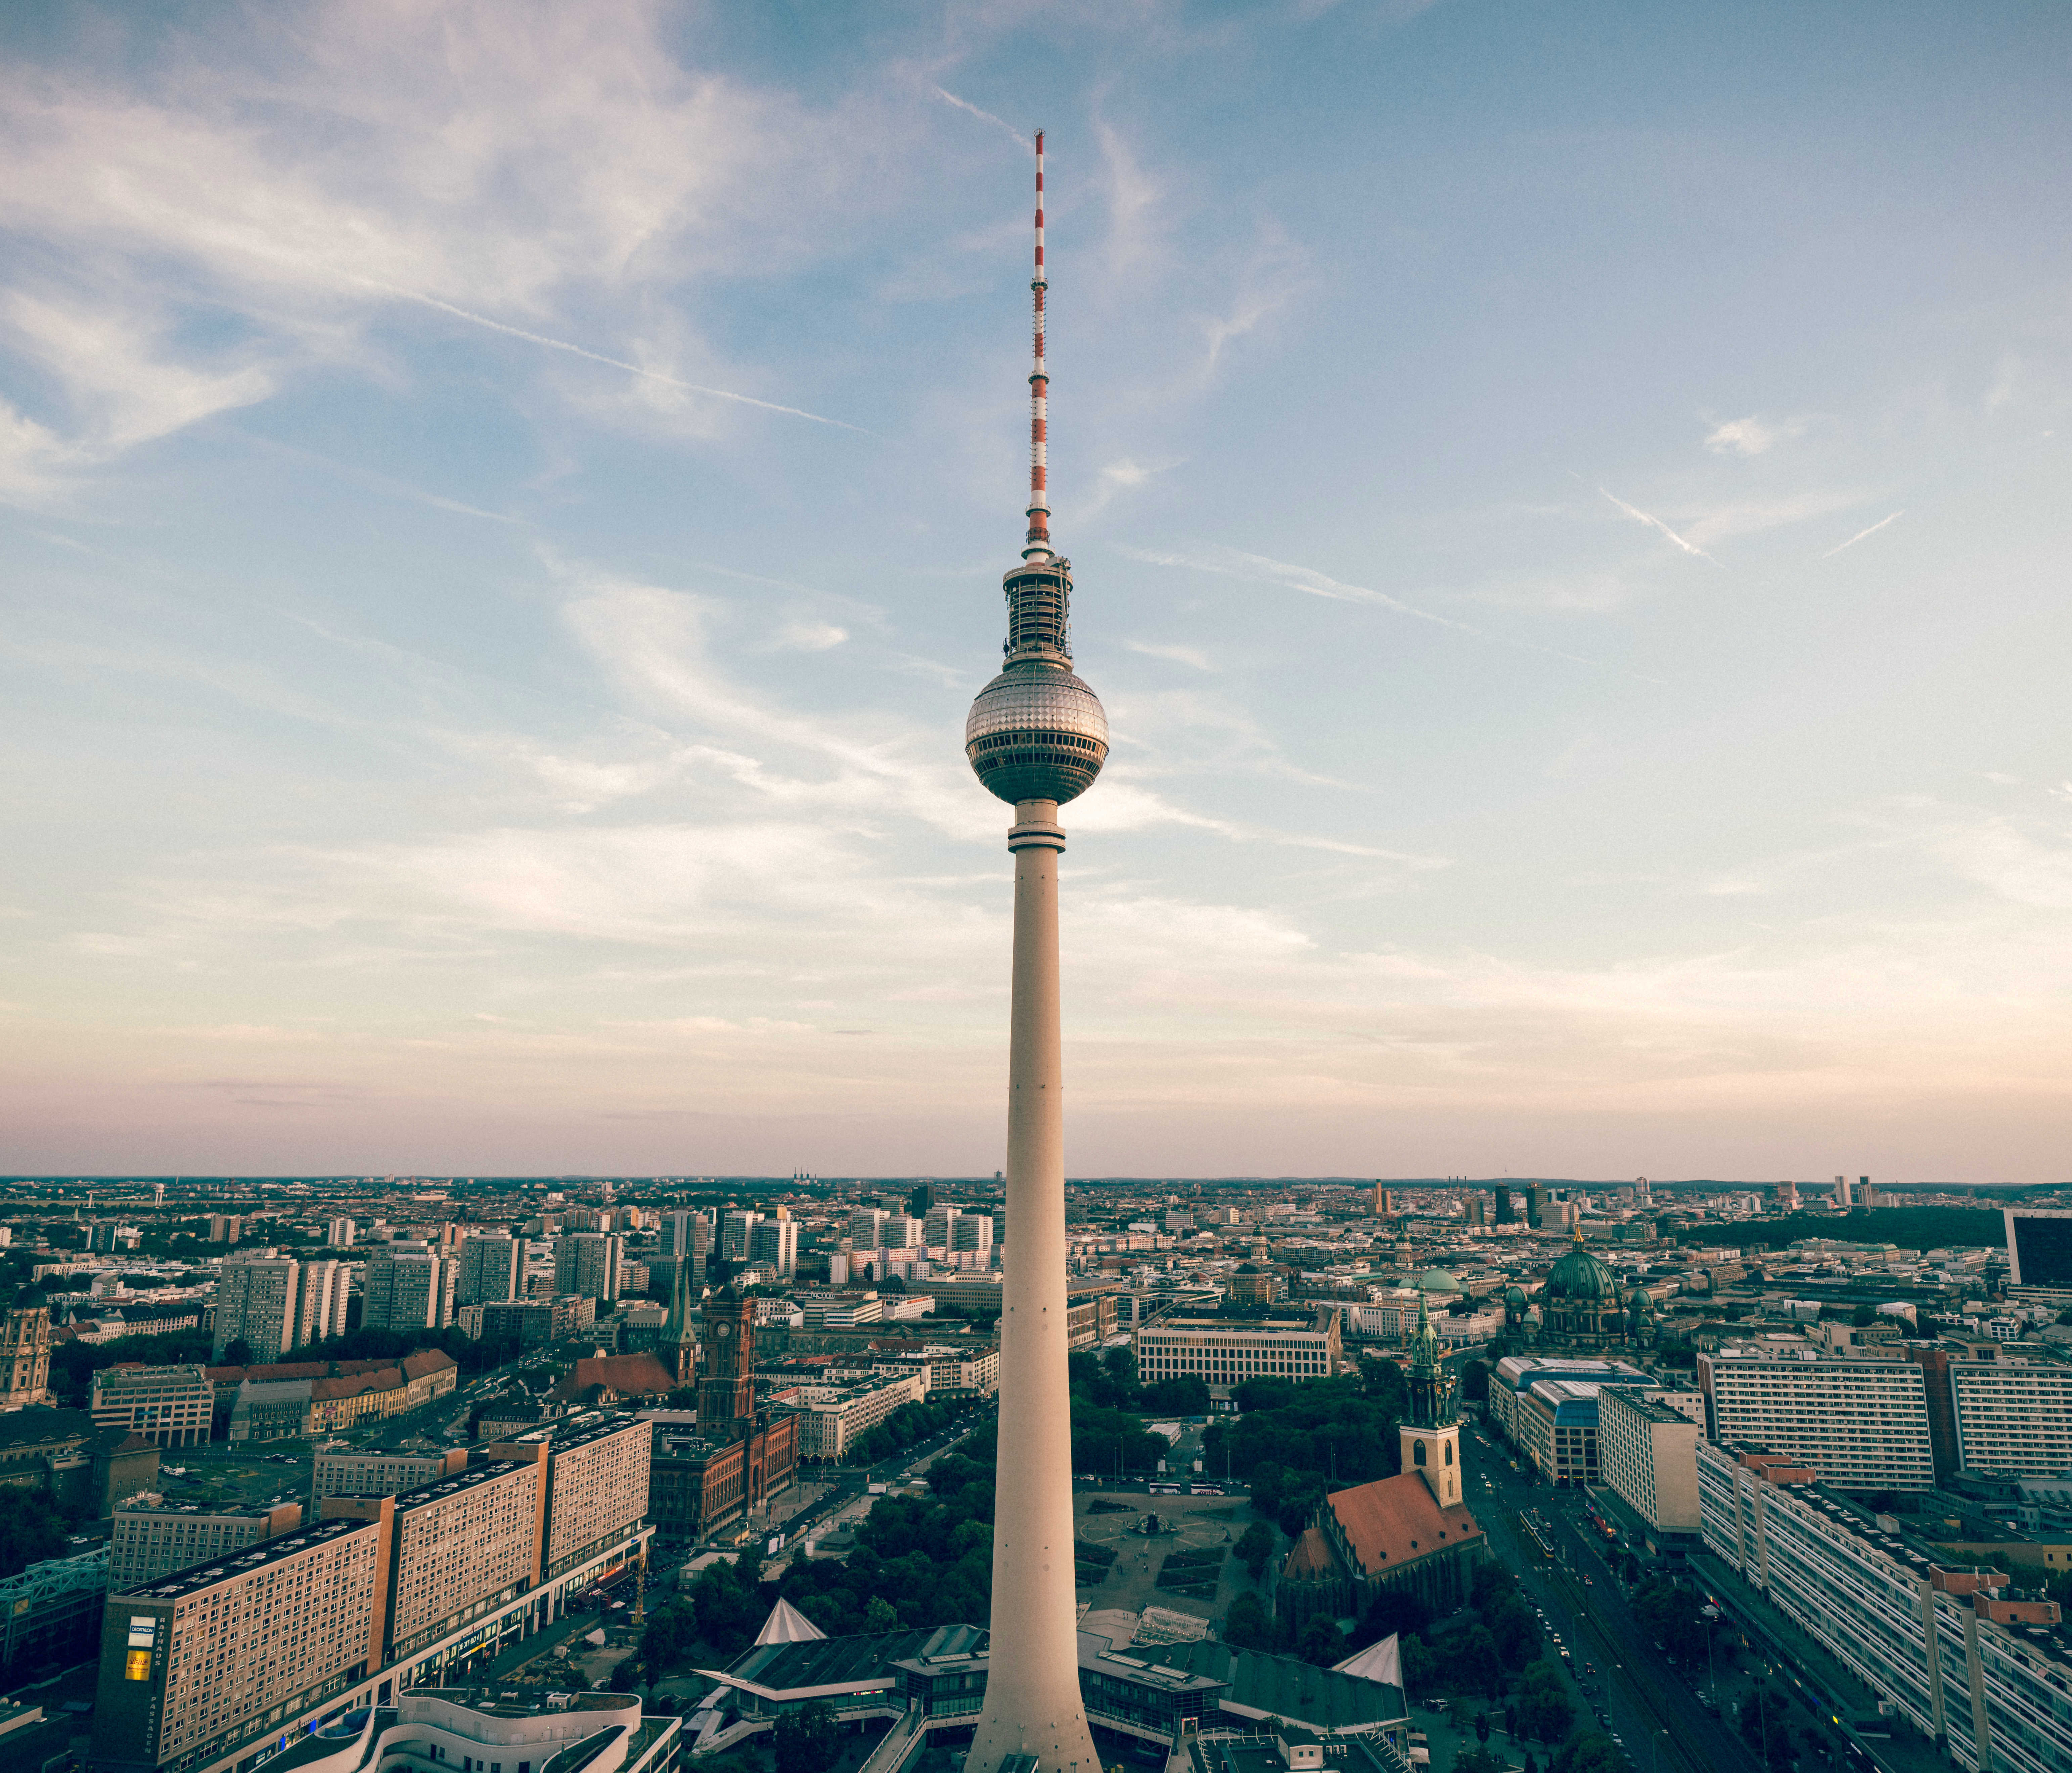 1,柏林电视塔(368米)今天我们来欣赏一下德国的电视塔